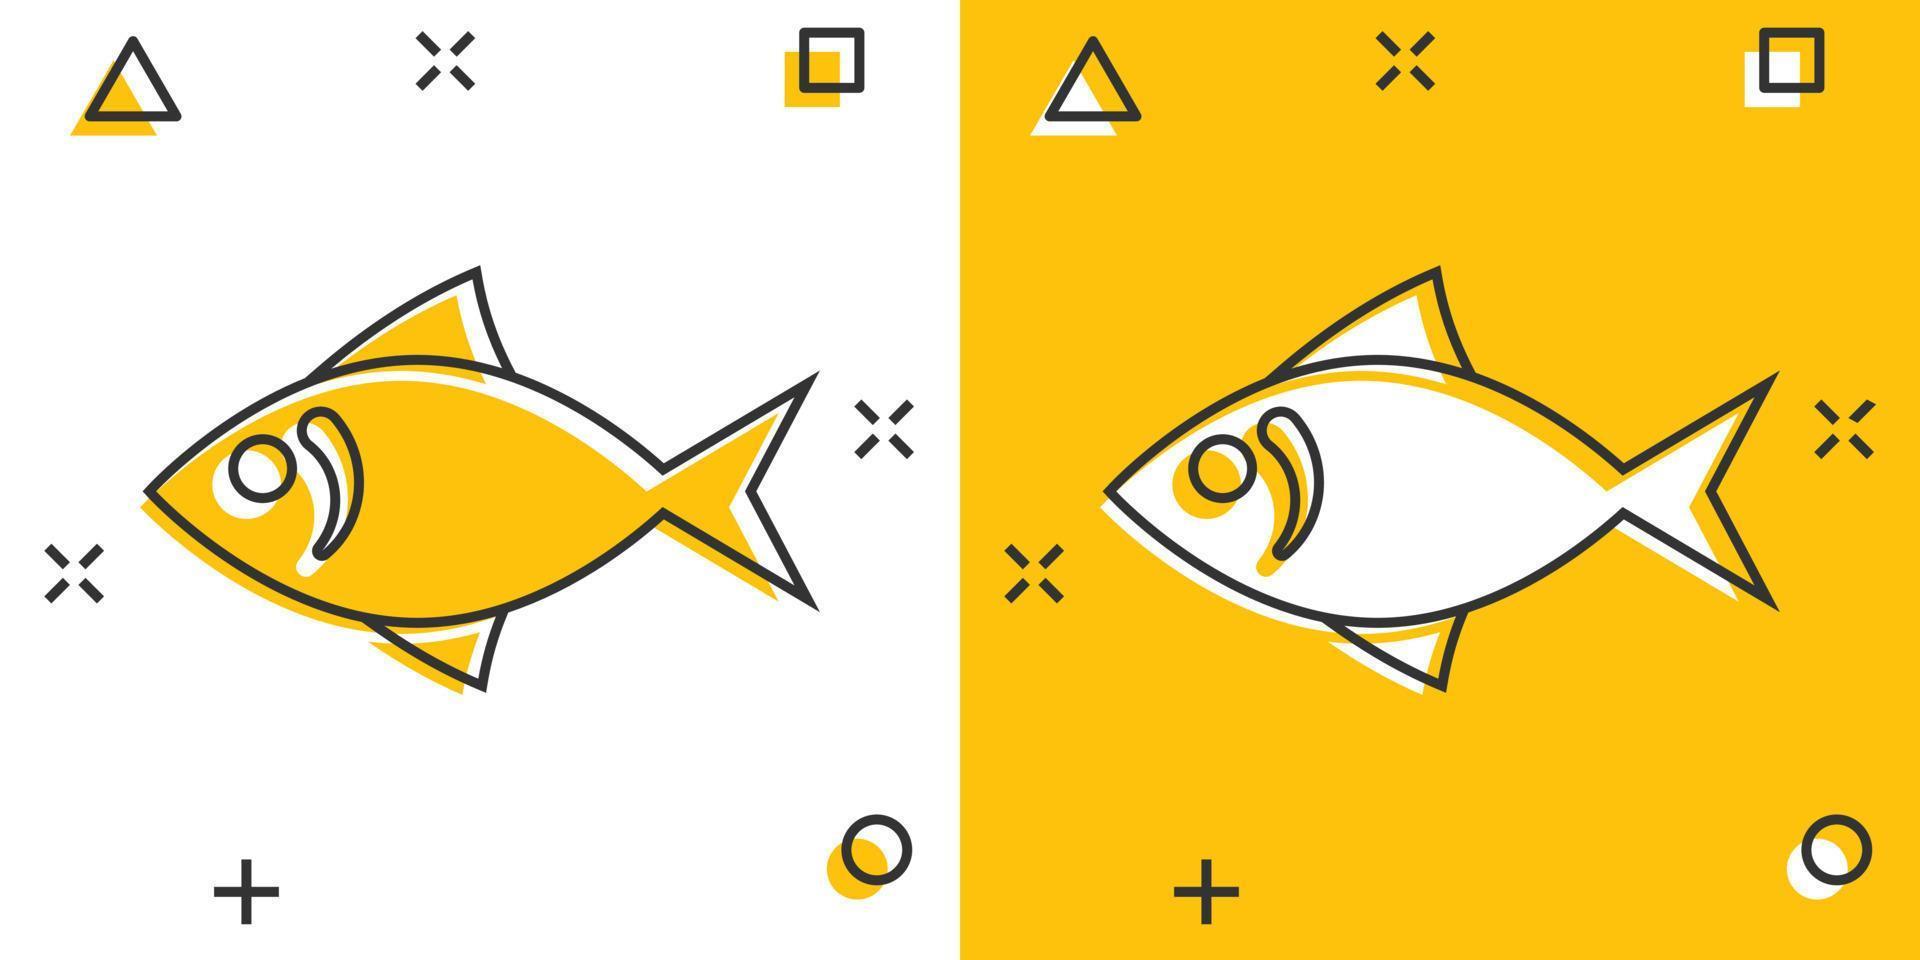 icône de poisson dans le style comique. illustration de vecteur de dessin animé de fruits de mer sur fond blanc isolé. concept d'entreprise d'effet d'éclaboussure d'animal marin.